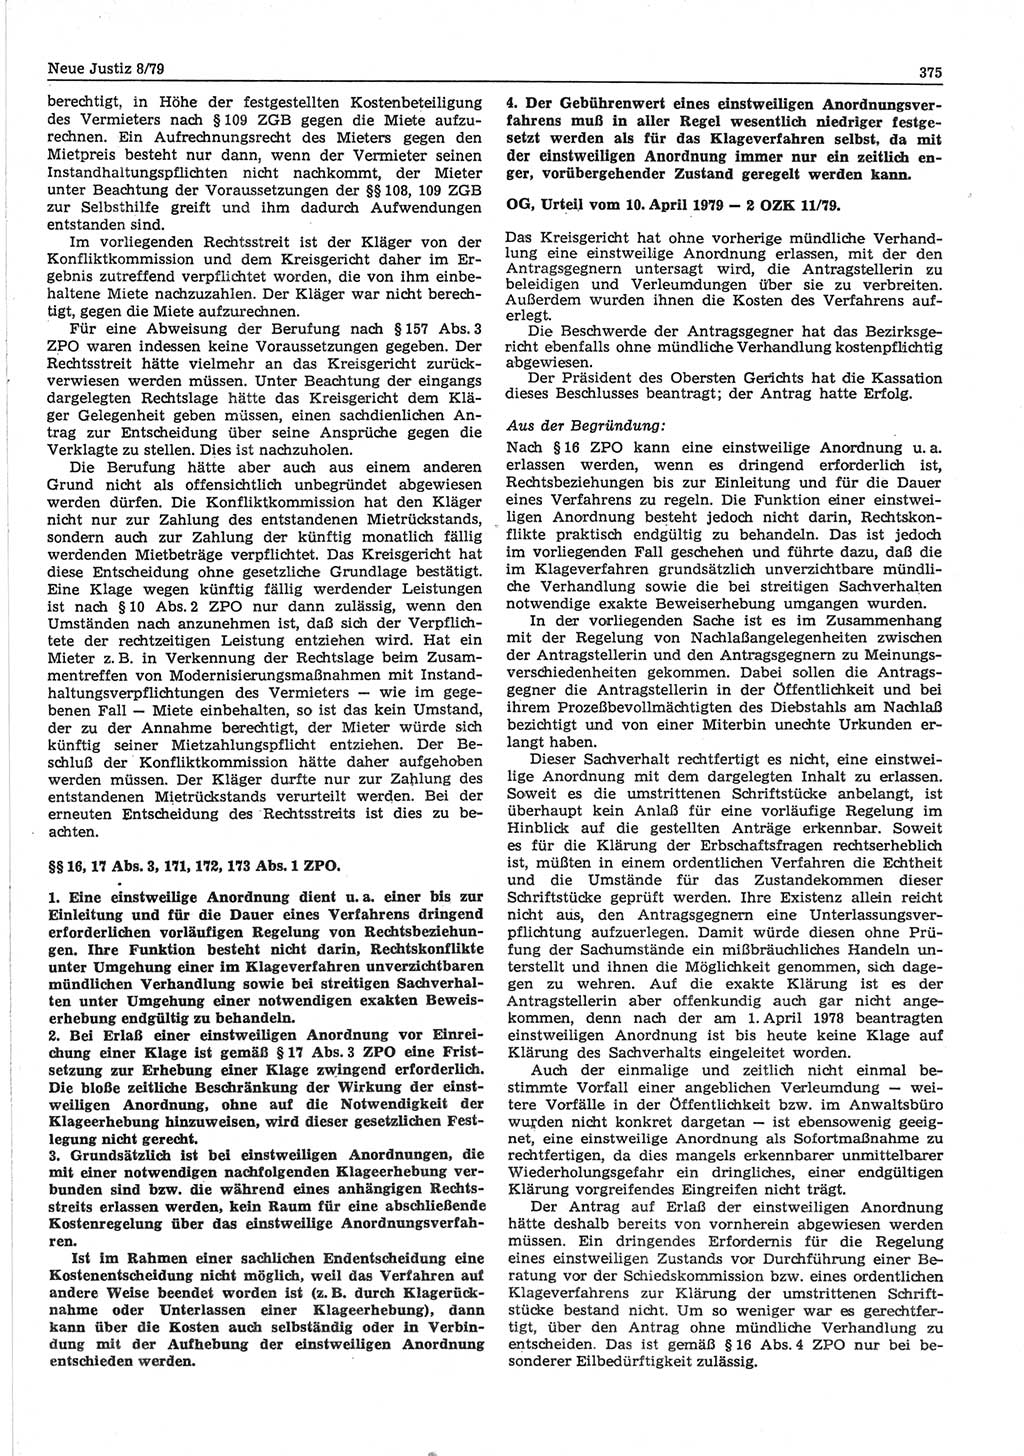 Neue Justiz (NJ), Zeitschrift für sozialistisches Recht und Gesetzlichkeit [Deutsche Demokratische Republik (DDR)], 33. Jahrgang 1979, Seite 375 (NJ DDR 1979, S. 375)